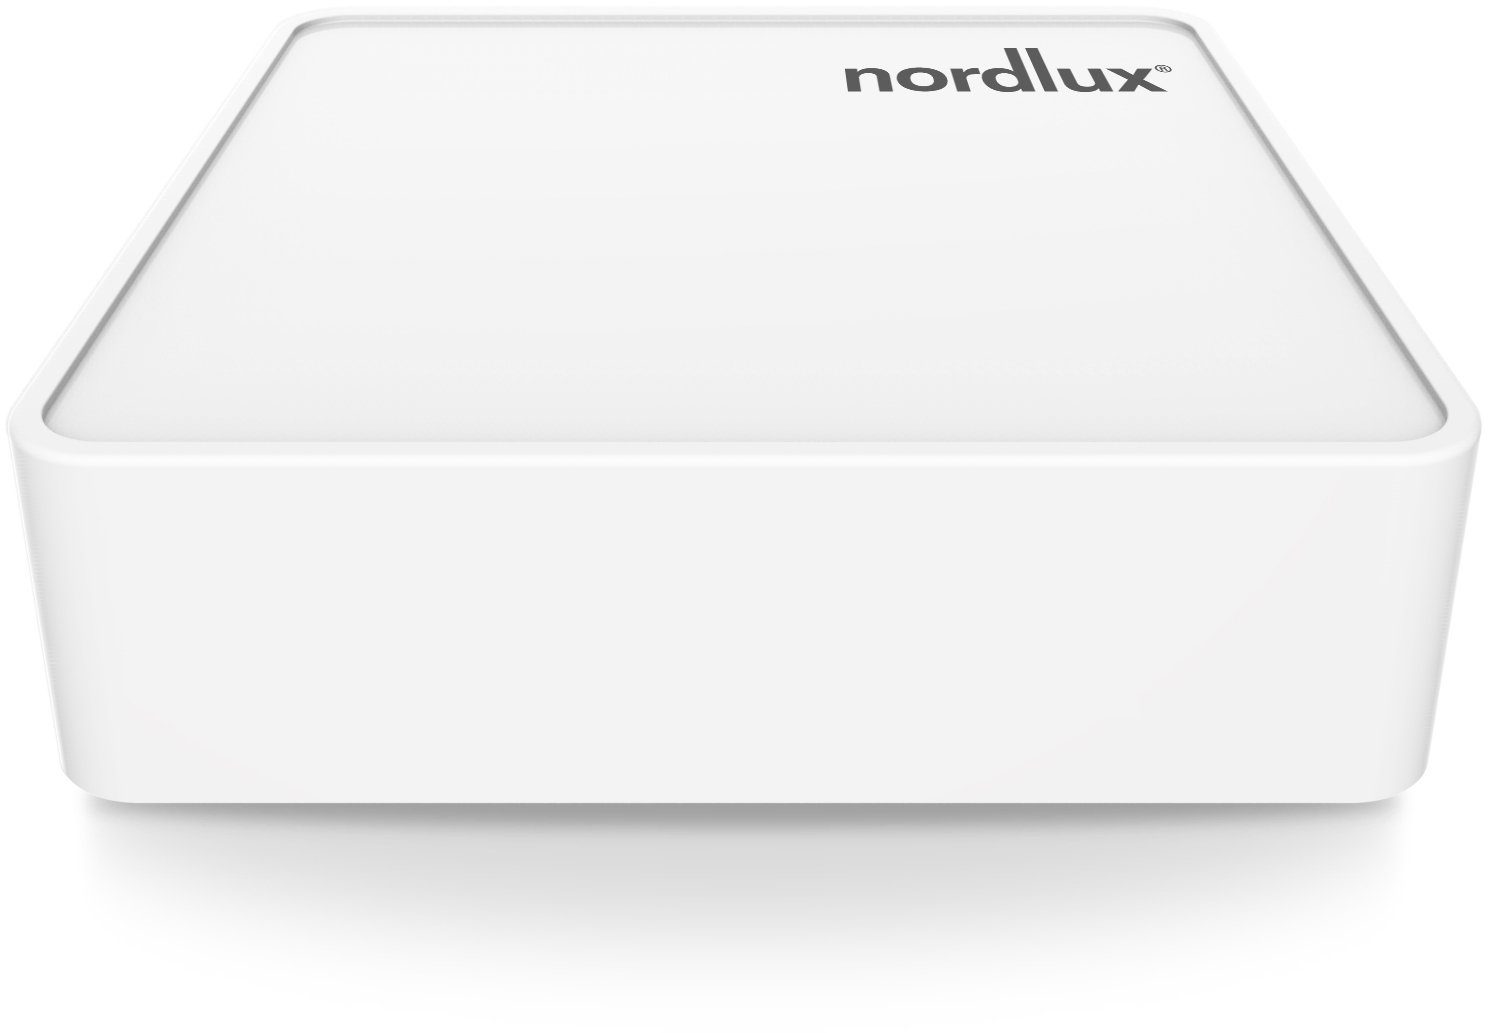 Nordlux Smartlight Bridge Smart-Home-Steuerelement, Smart Wifi Bridge, Home basiert